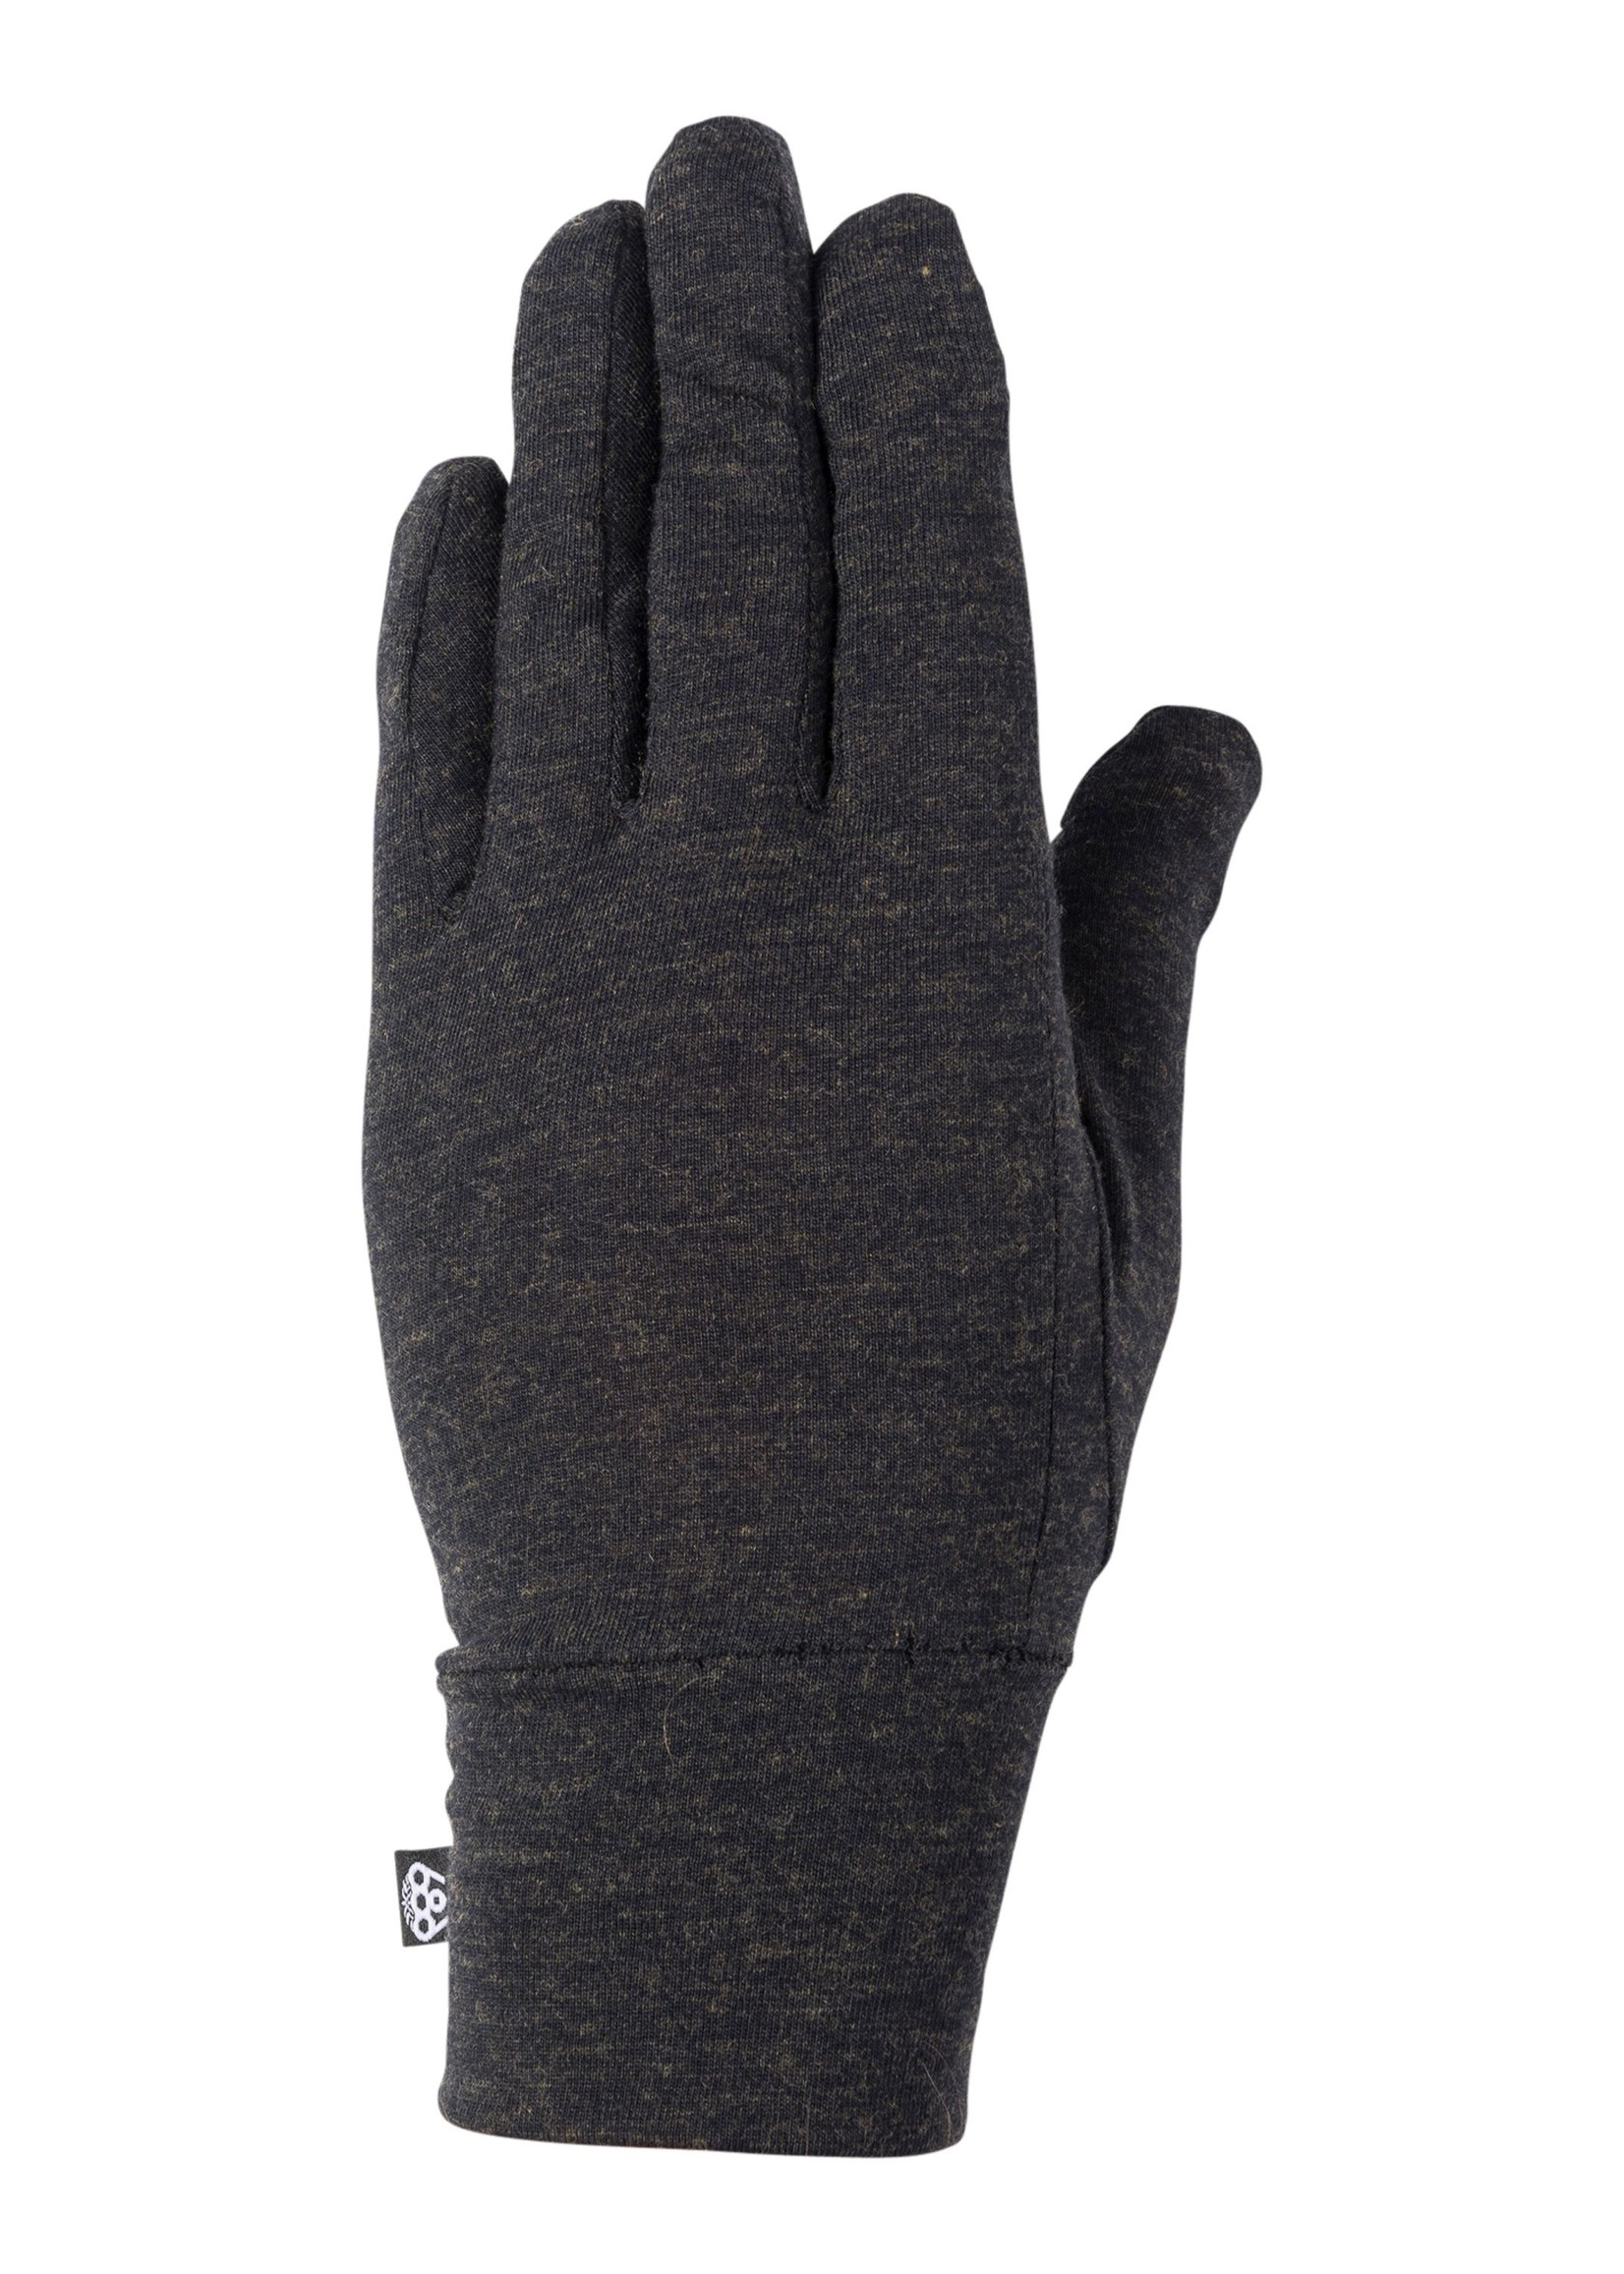 686 Men's Merino Glove Liner